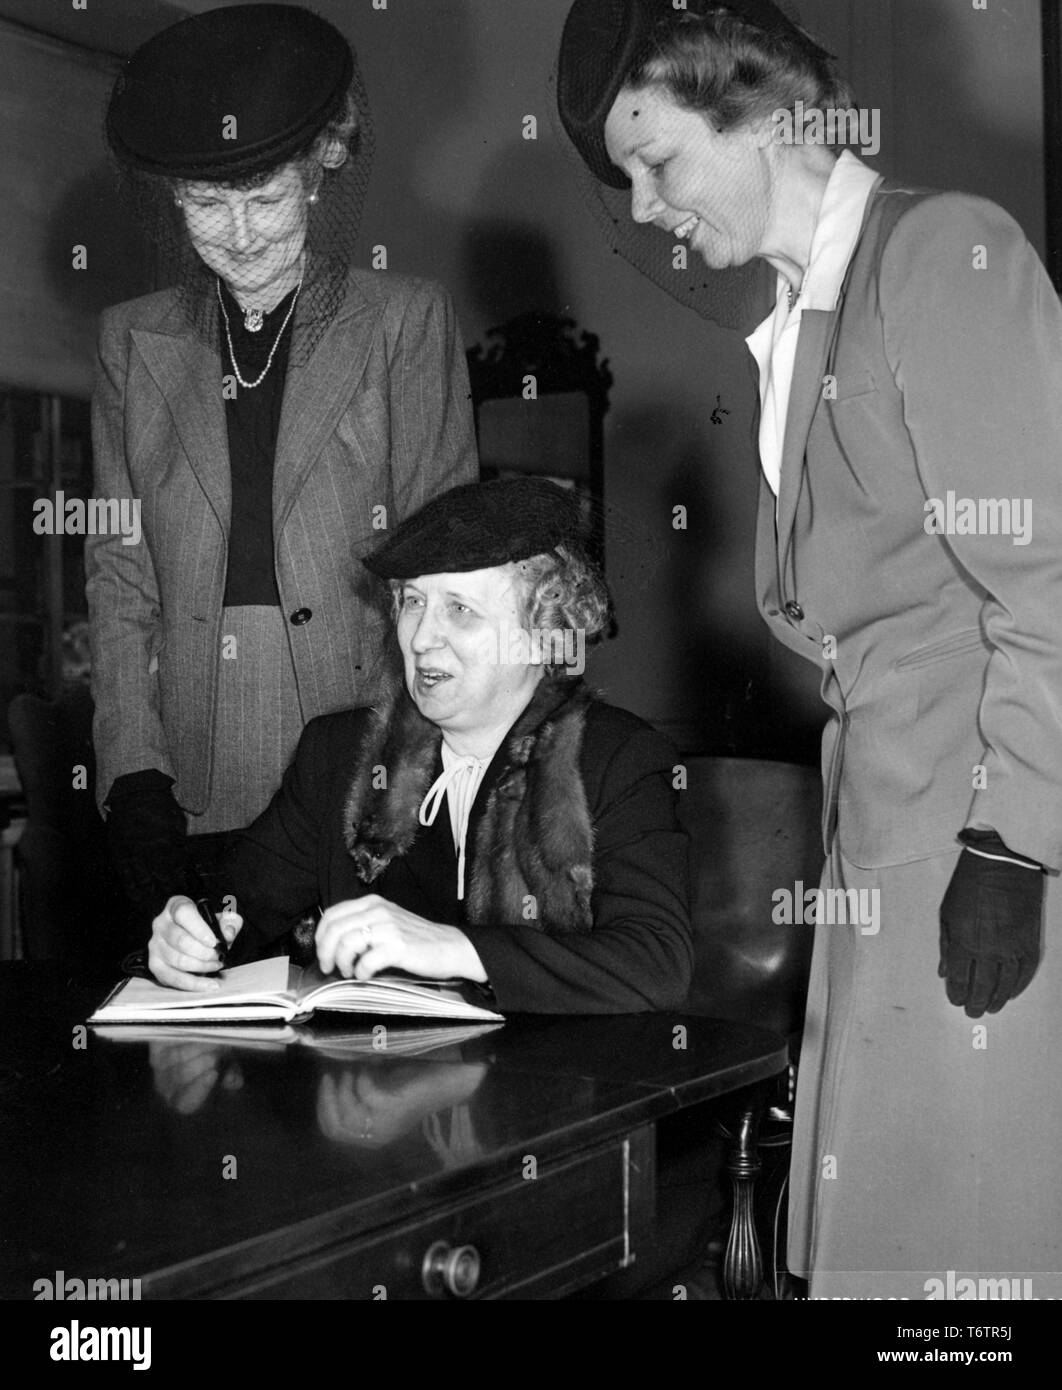 La First Lady Bess Truman, seduti ad una scrivania, cerca di scrivere in un libro mentre due donne sorridenti, indossa una scatola di pillole reticolare cappelli, guardare oltre la sua spalla, 1946. Immagine cortesia archivi nazionali. () Foto Stock